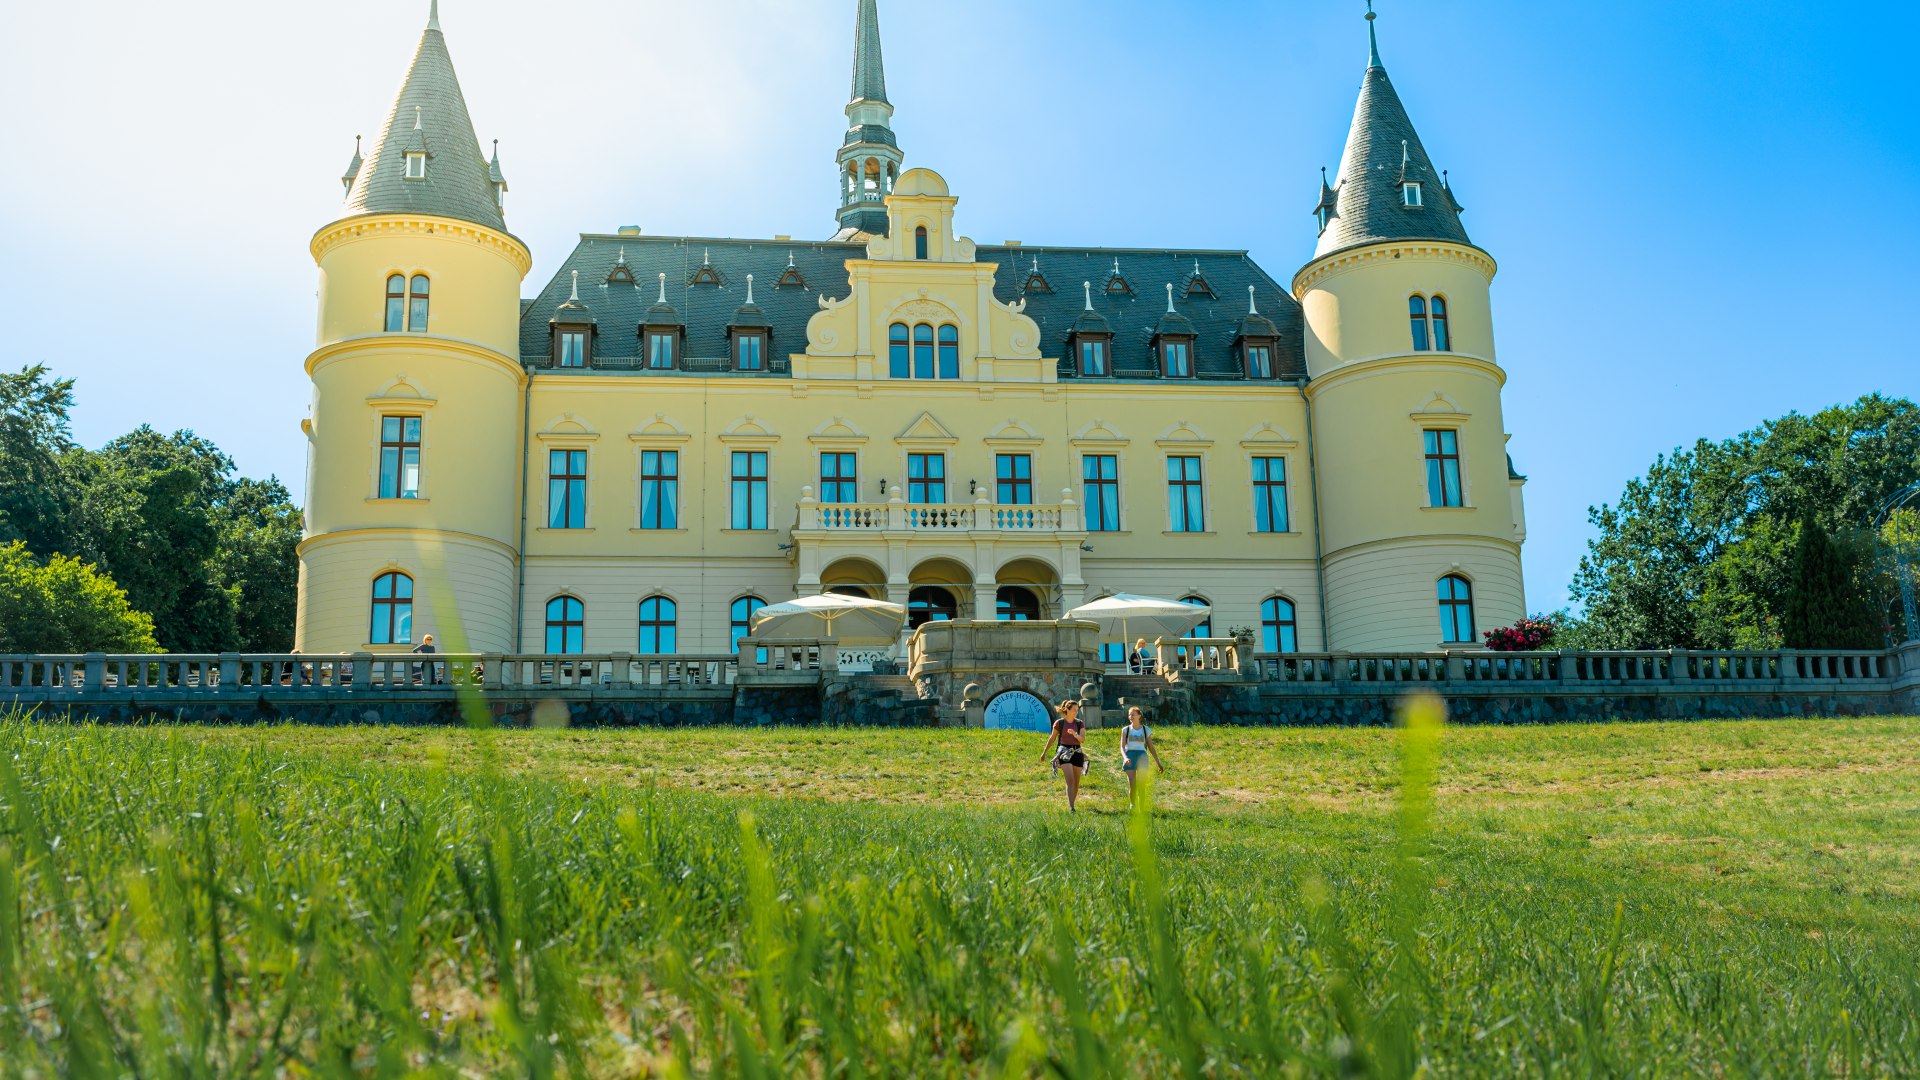 diente das Schloss Ralswiek über die Jahre schon als Kasino und Altenheim. Heute befindet sich ein Hotelbetrieb hinter den alten Mauern., © TMV/Tiemann